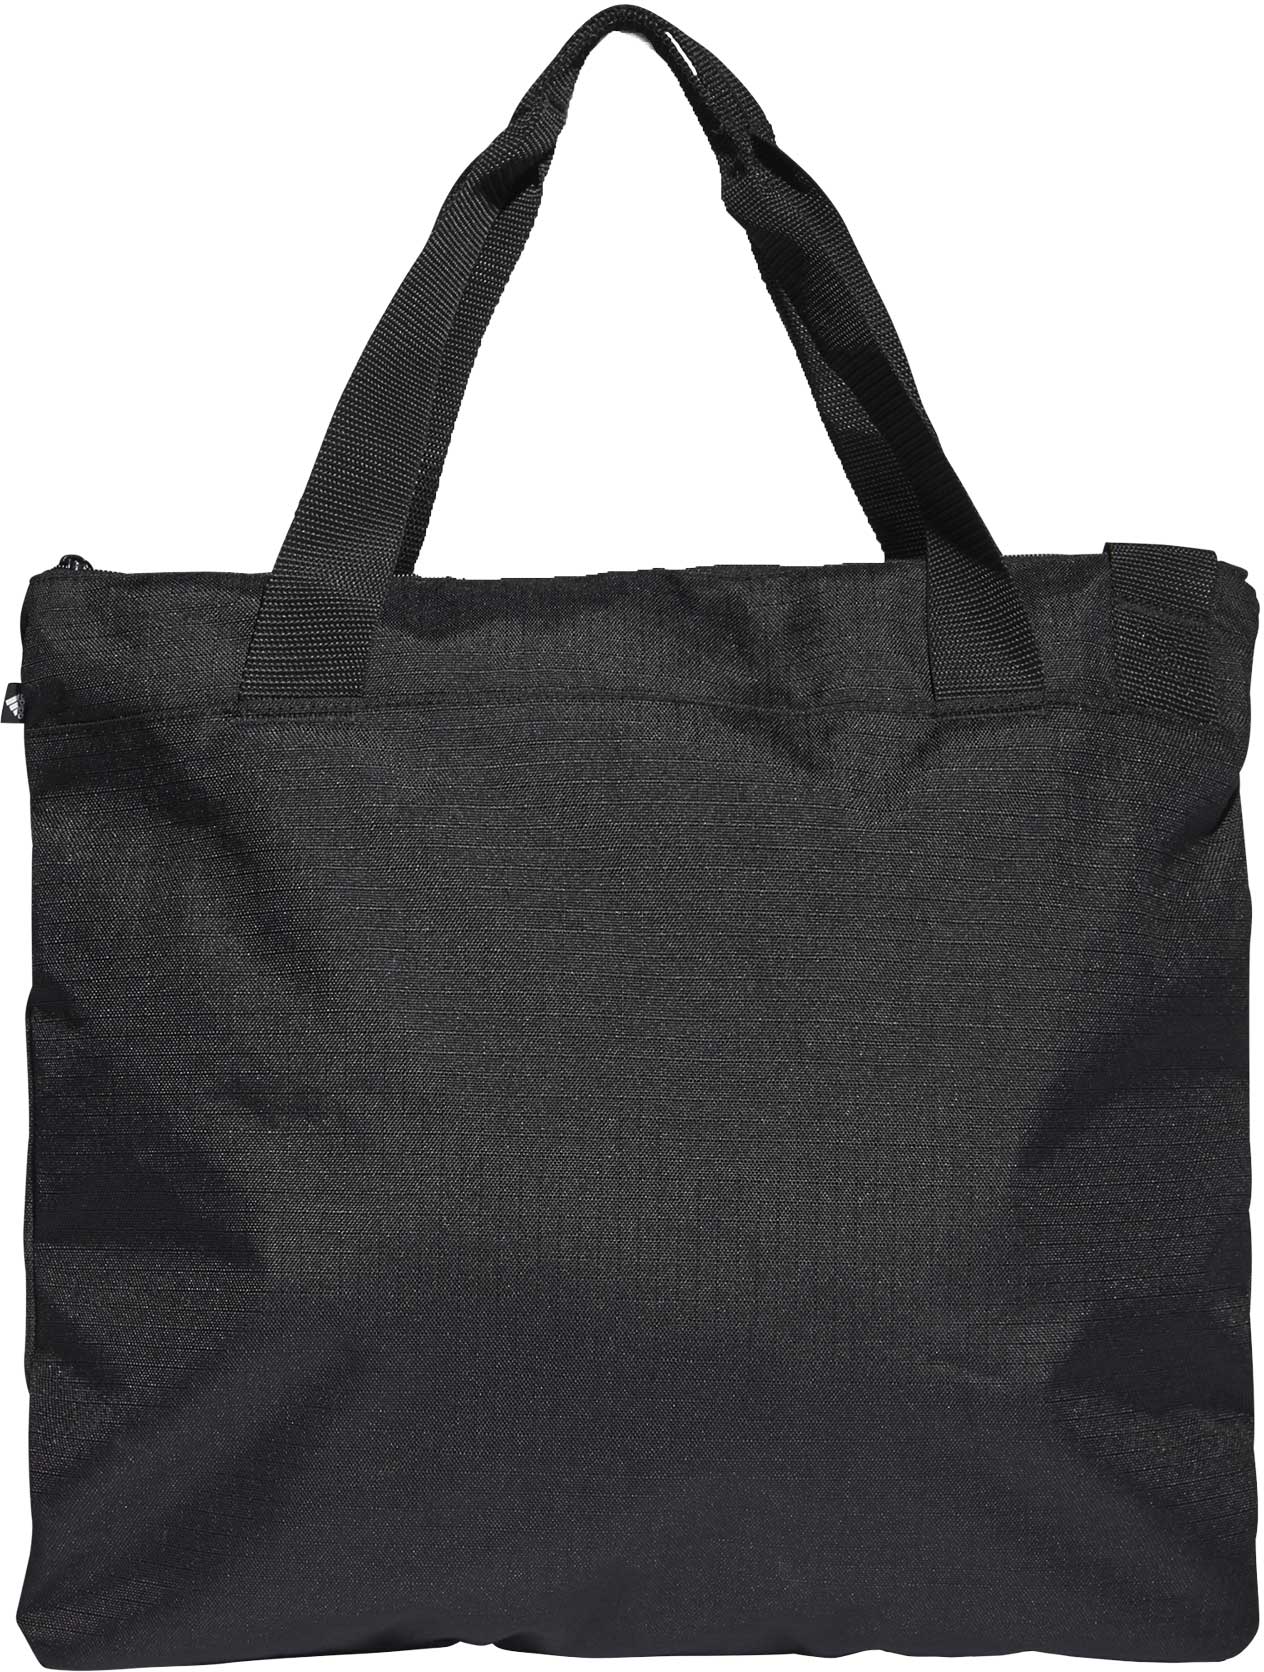 Women's tote bag